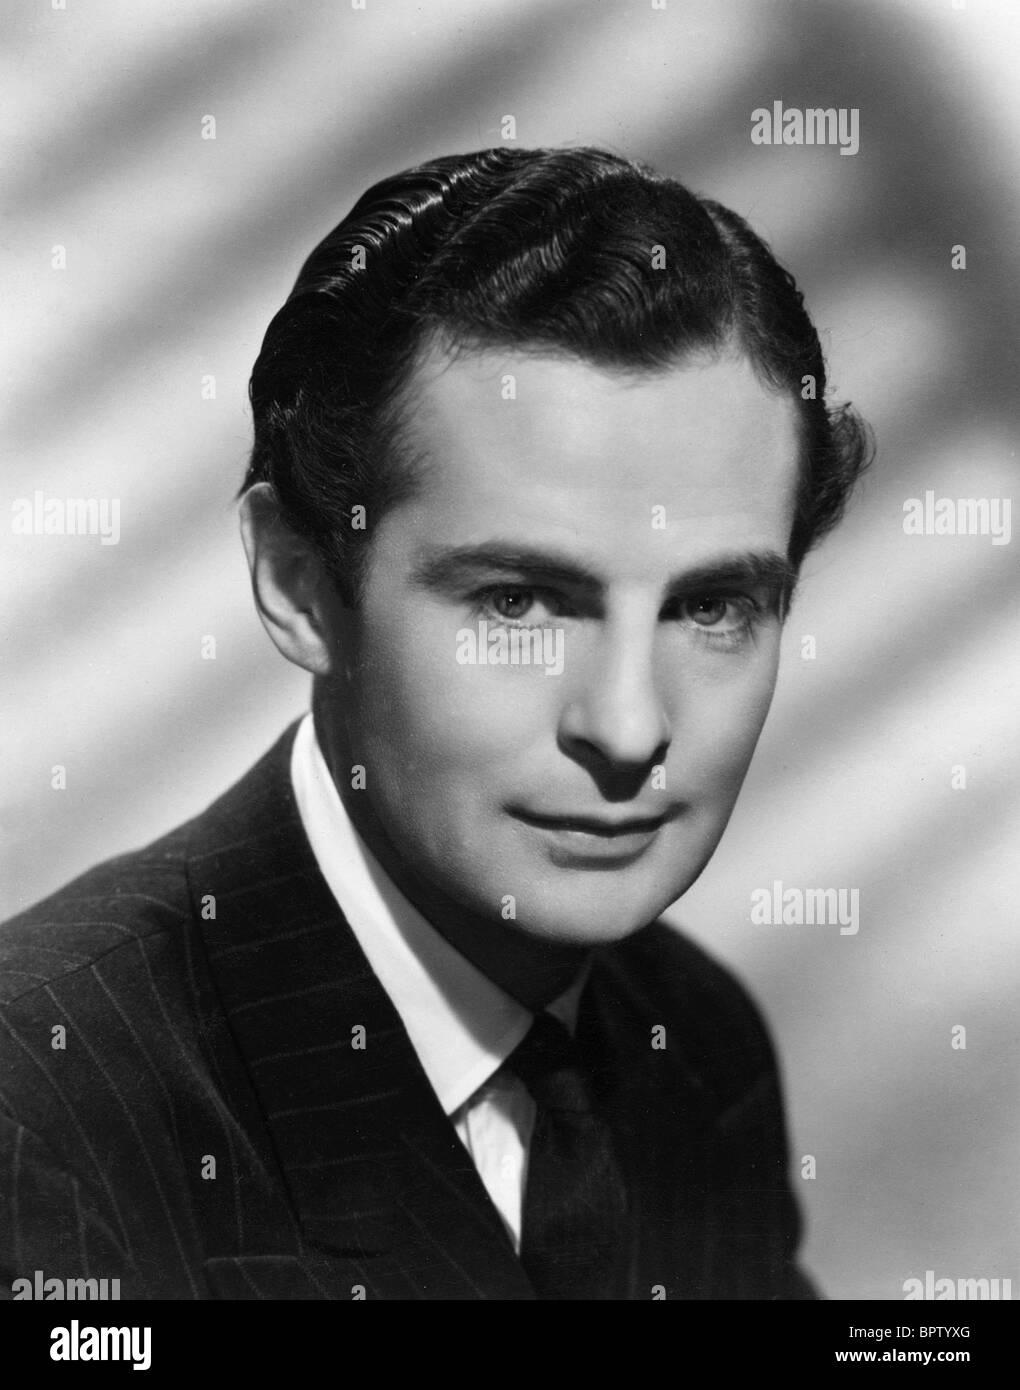 DEREK BOND ACTOR (1947) Stock Photo - derek-bond-actor-1947-BPTYXG